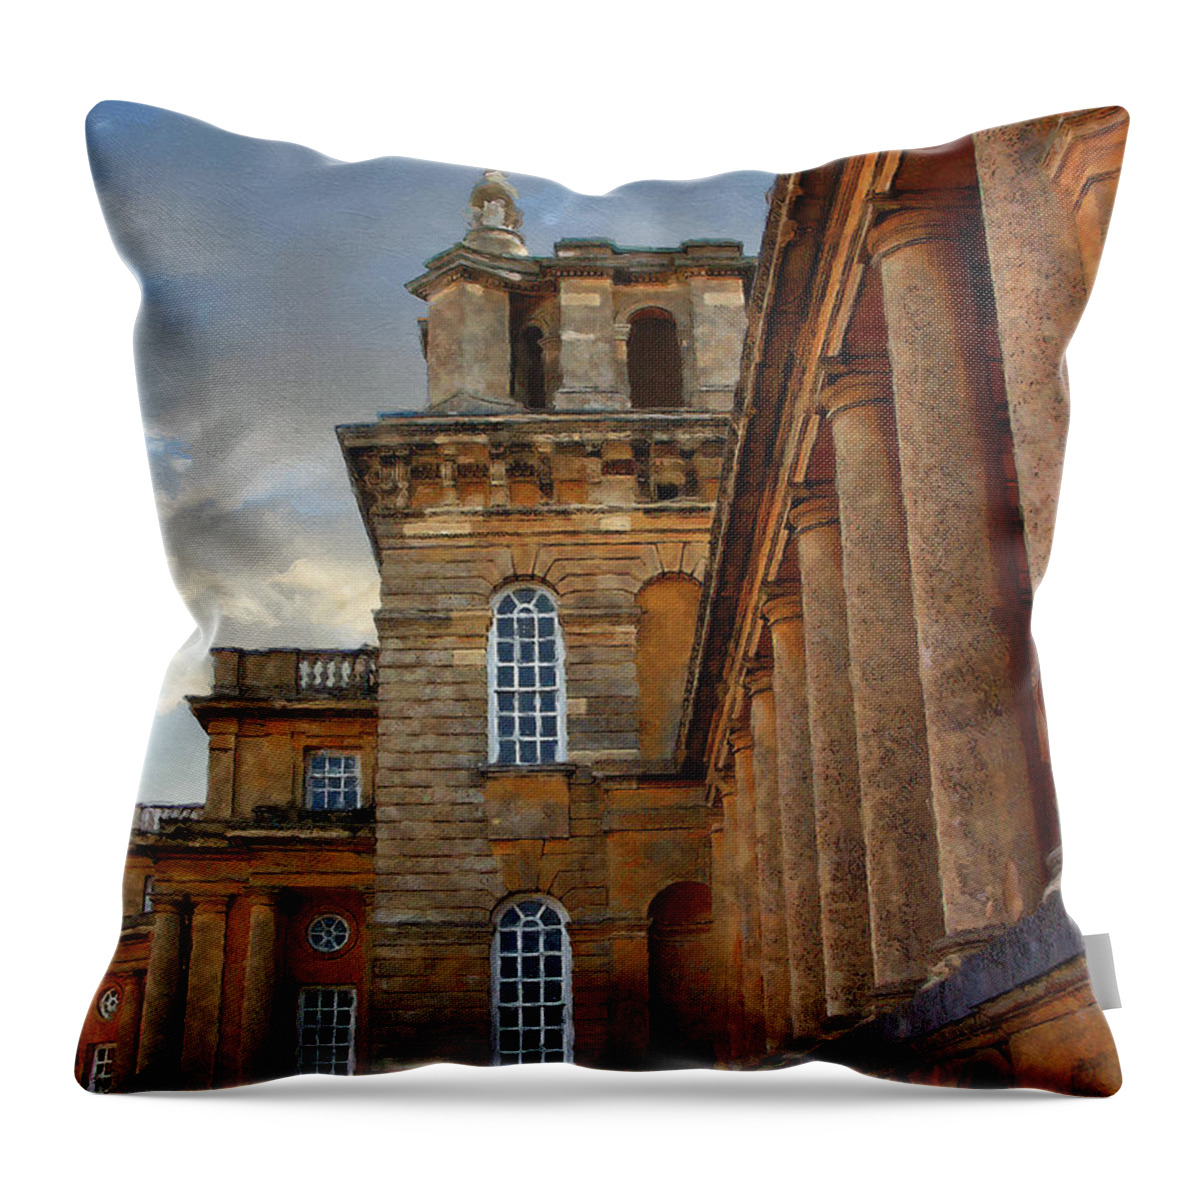 Blenheim Palace Throw Pillow featuring the photograph Blenheim at Dusk by Brian Watt